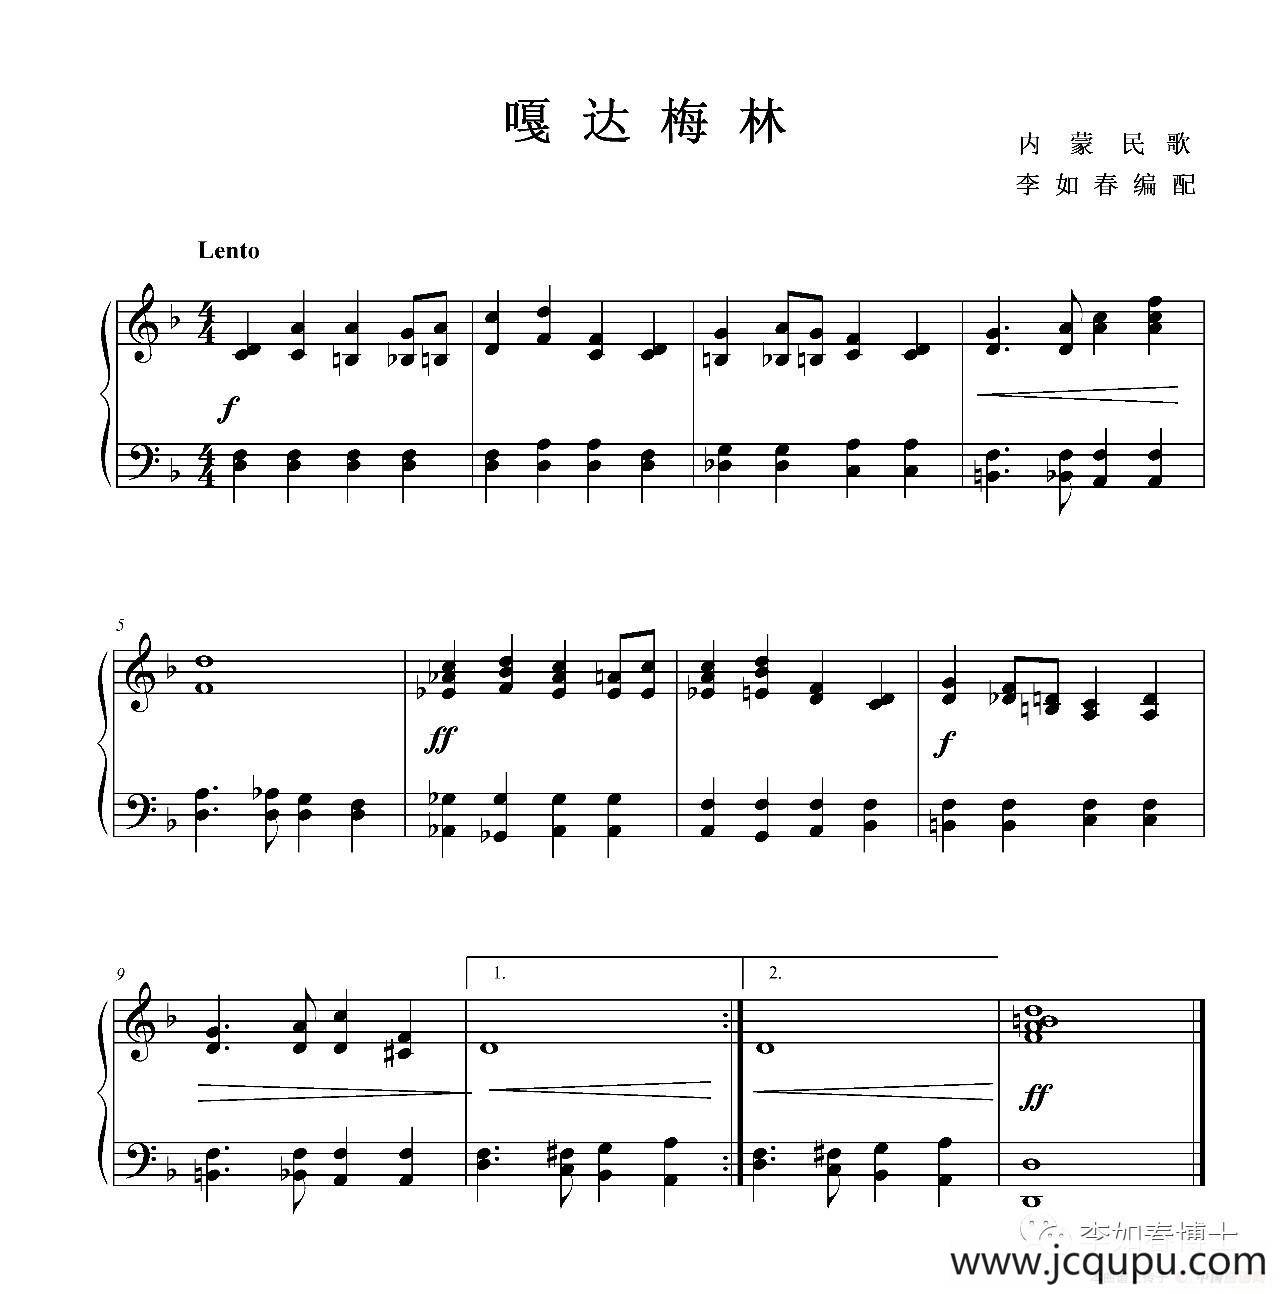 嘎达梅林(钢琴小品,李如春编配版)简谱